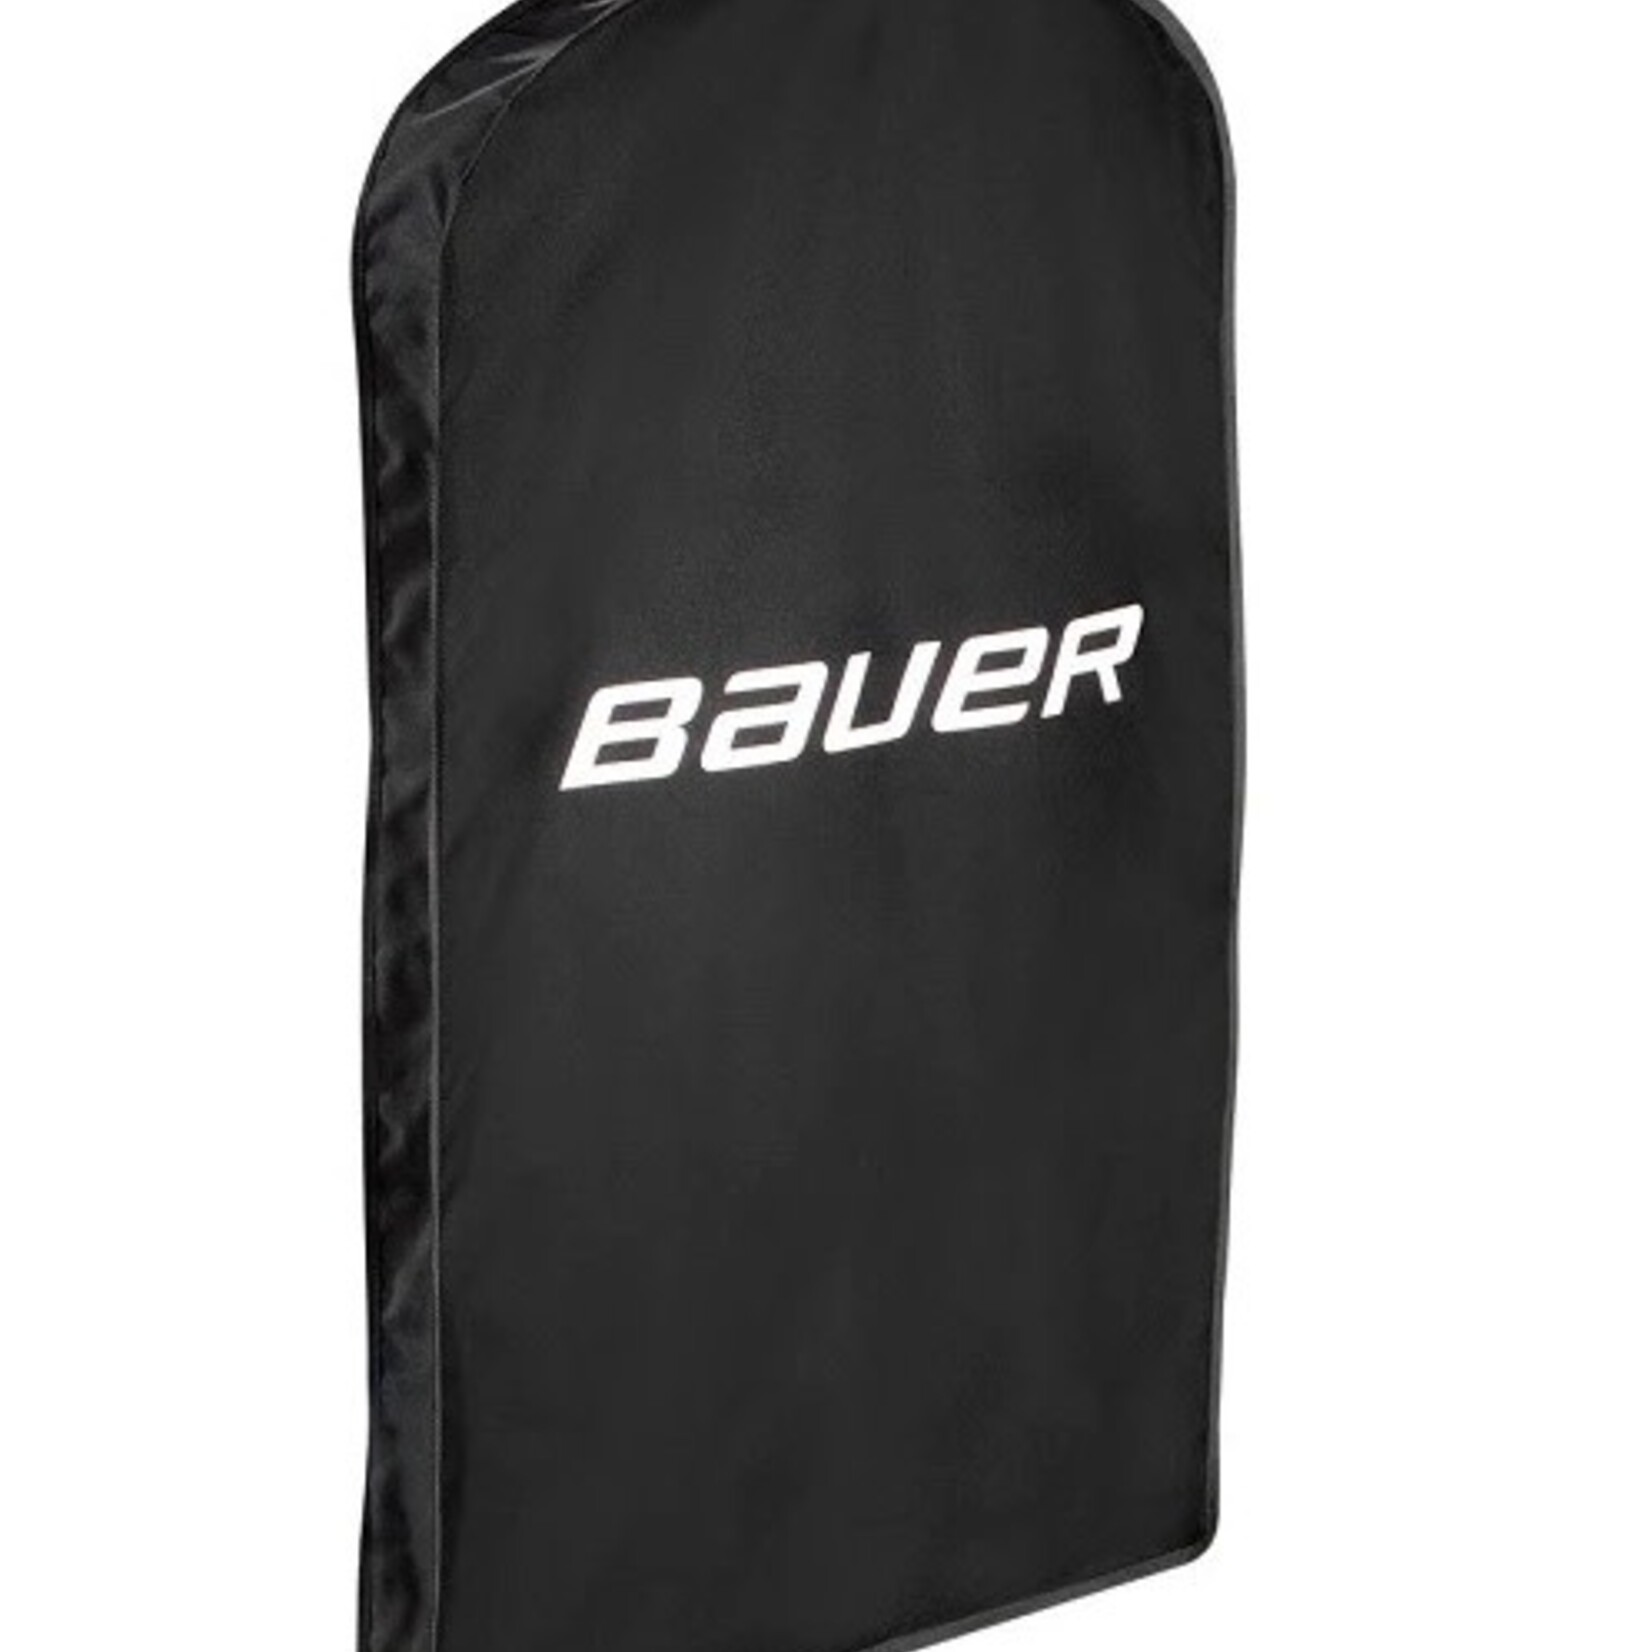 Bauer Bauer Team Jersey Bag, Blk